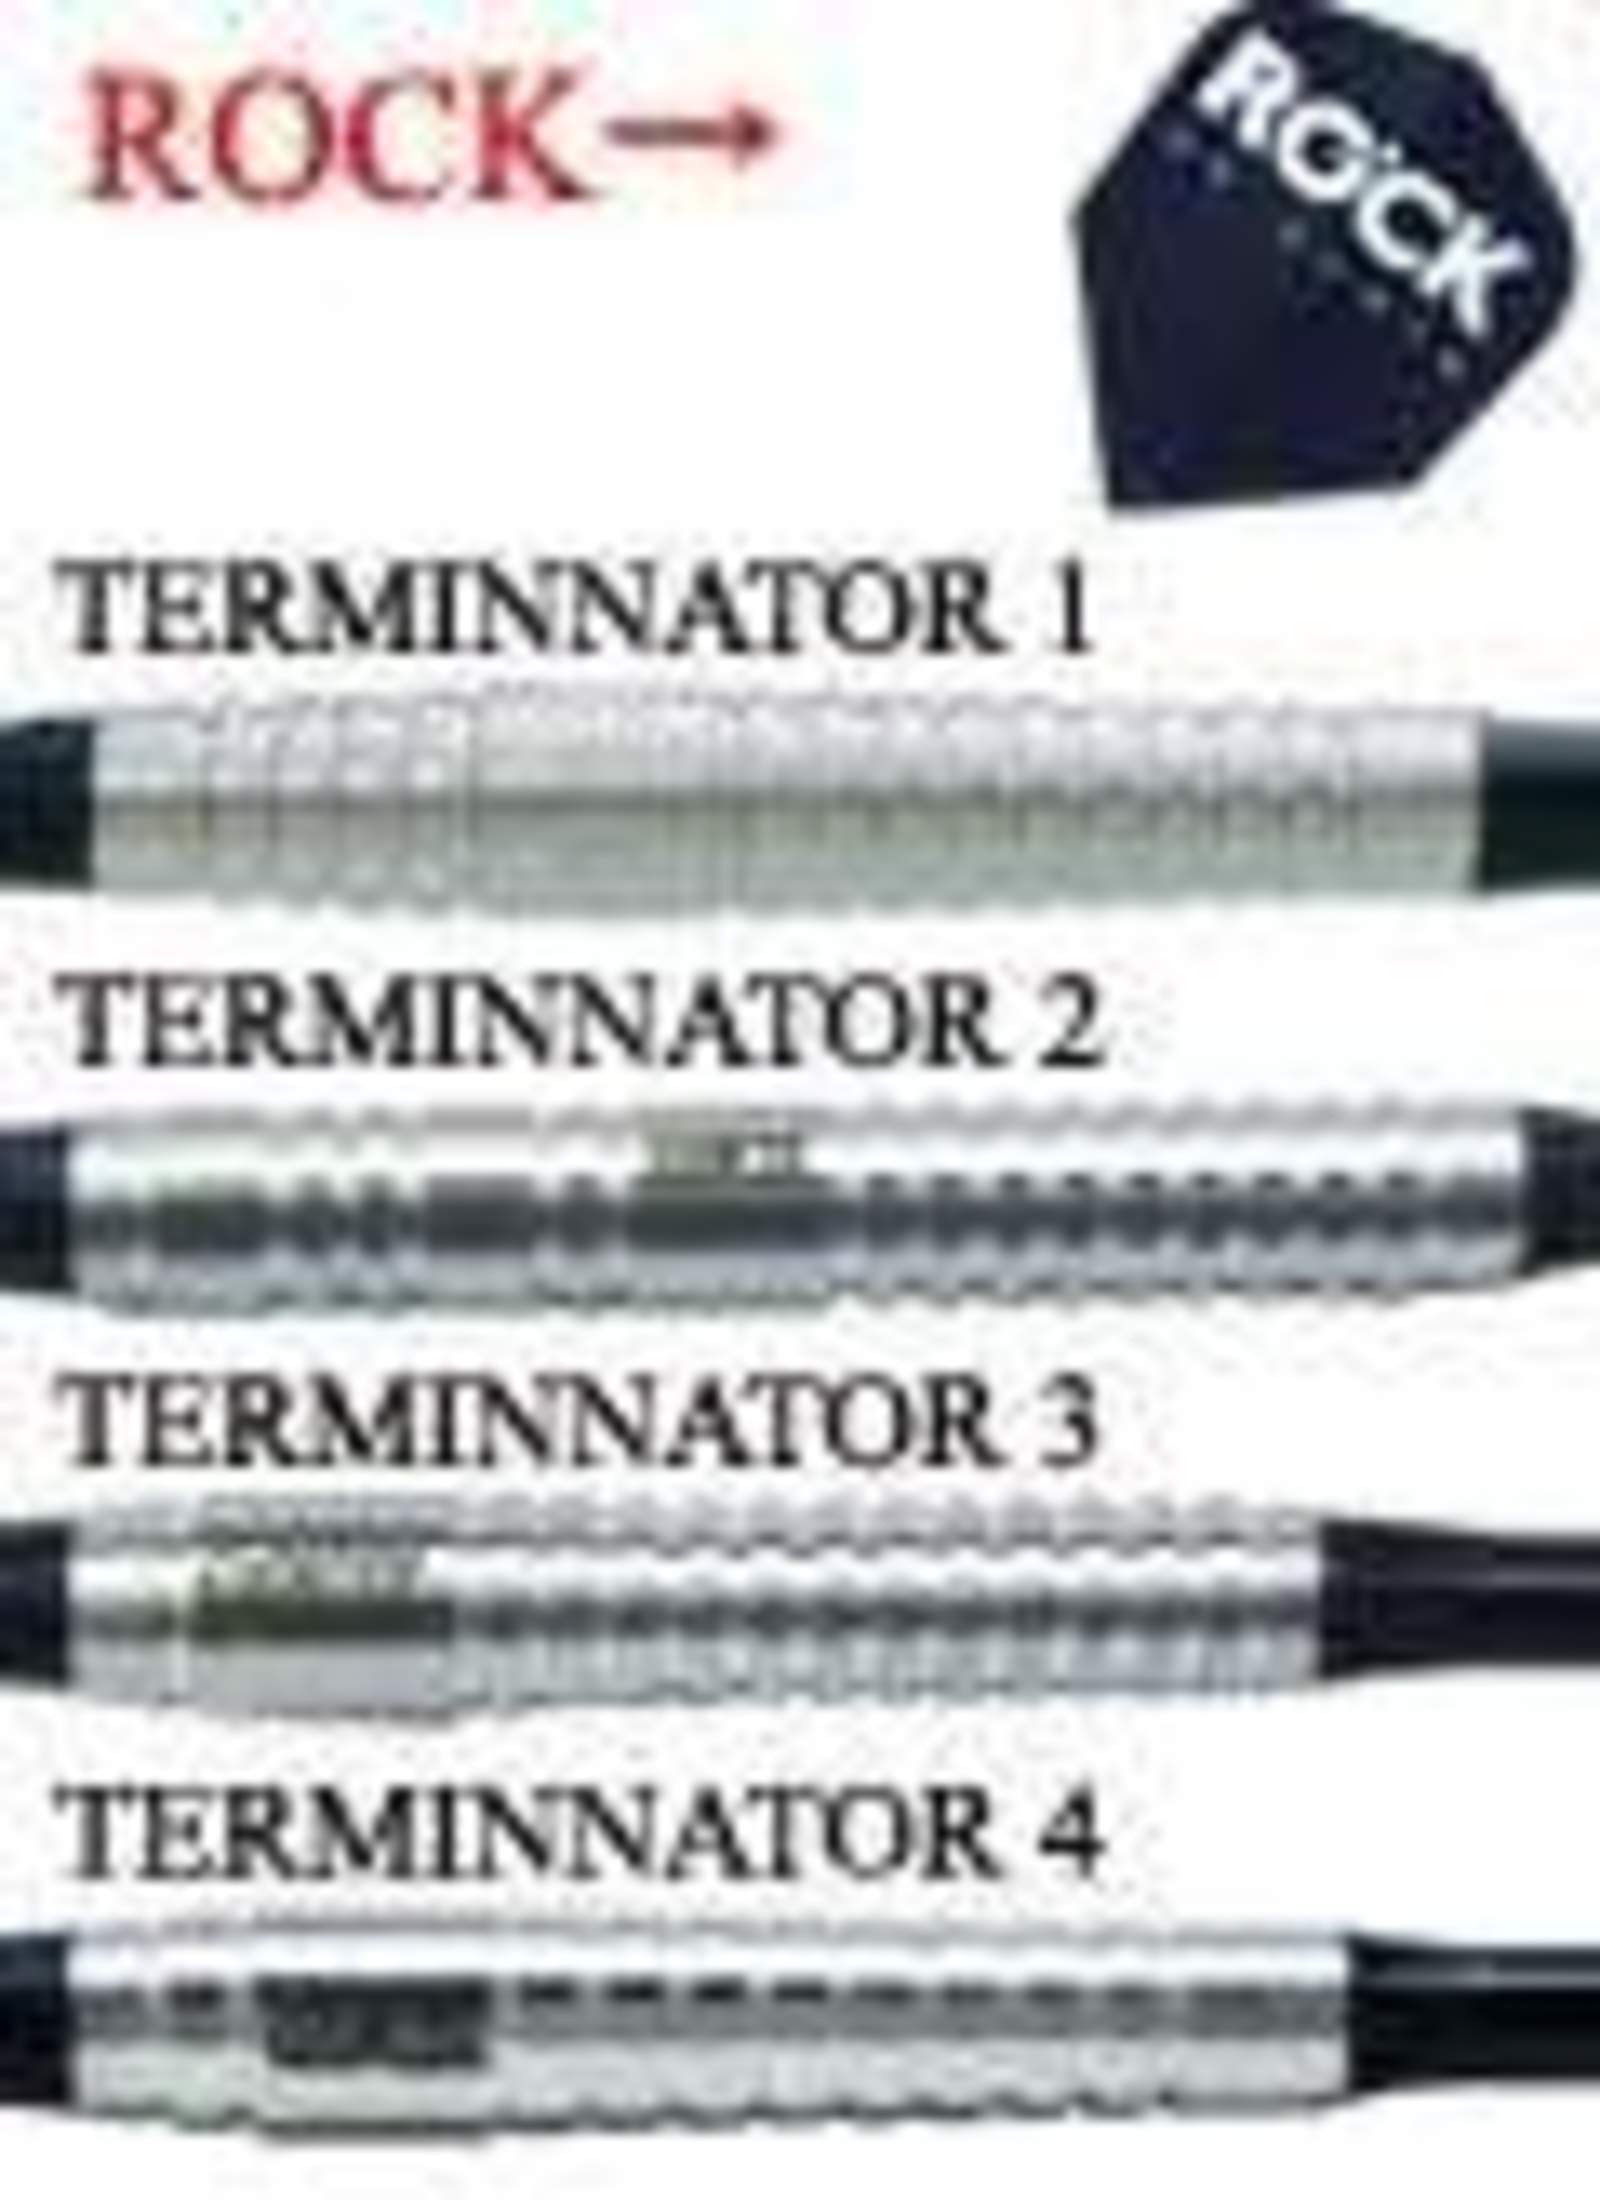 ダーツバレル【ロック】ロック UK Darts TERMINATOR3 Silver 20g｜ダーツ用品はエスダーツ 延べ70万人以上が利用している ダーツショップ